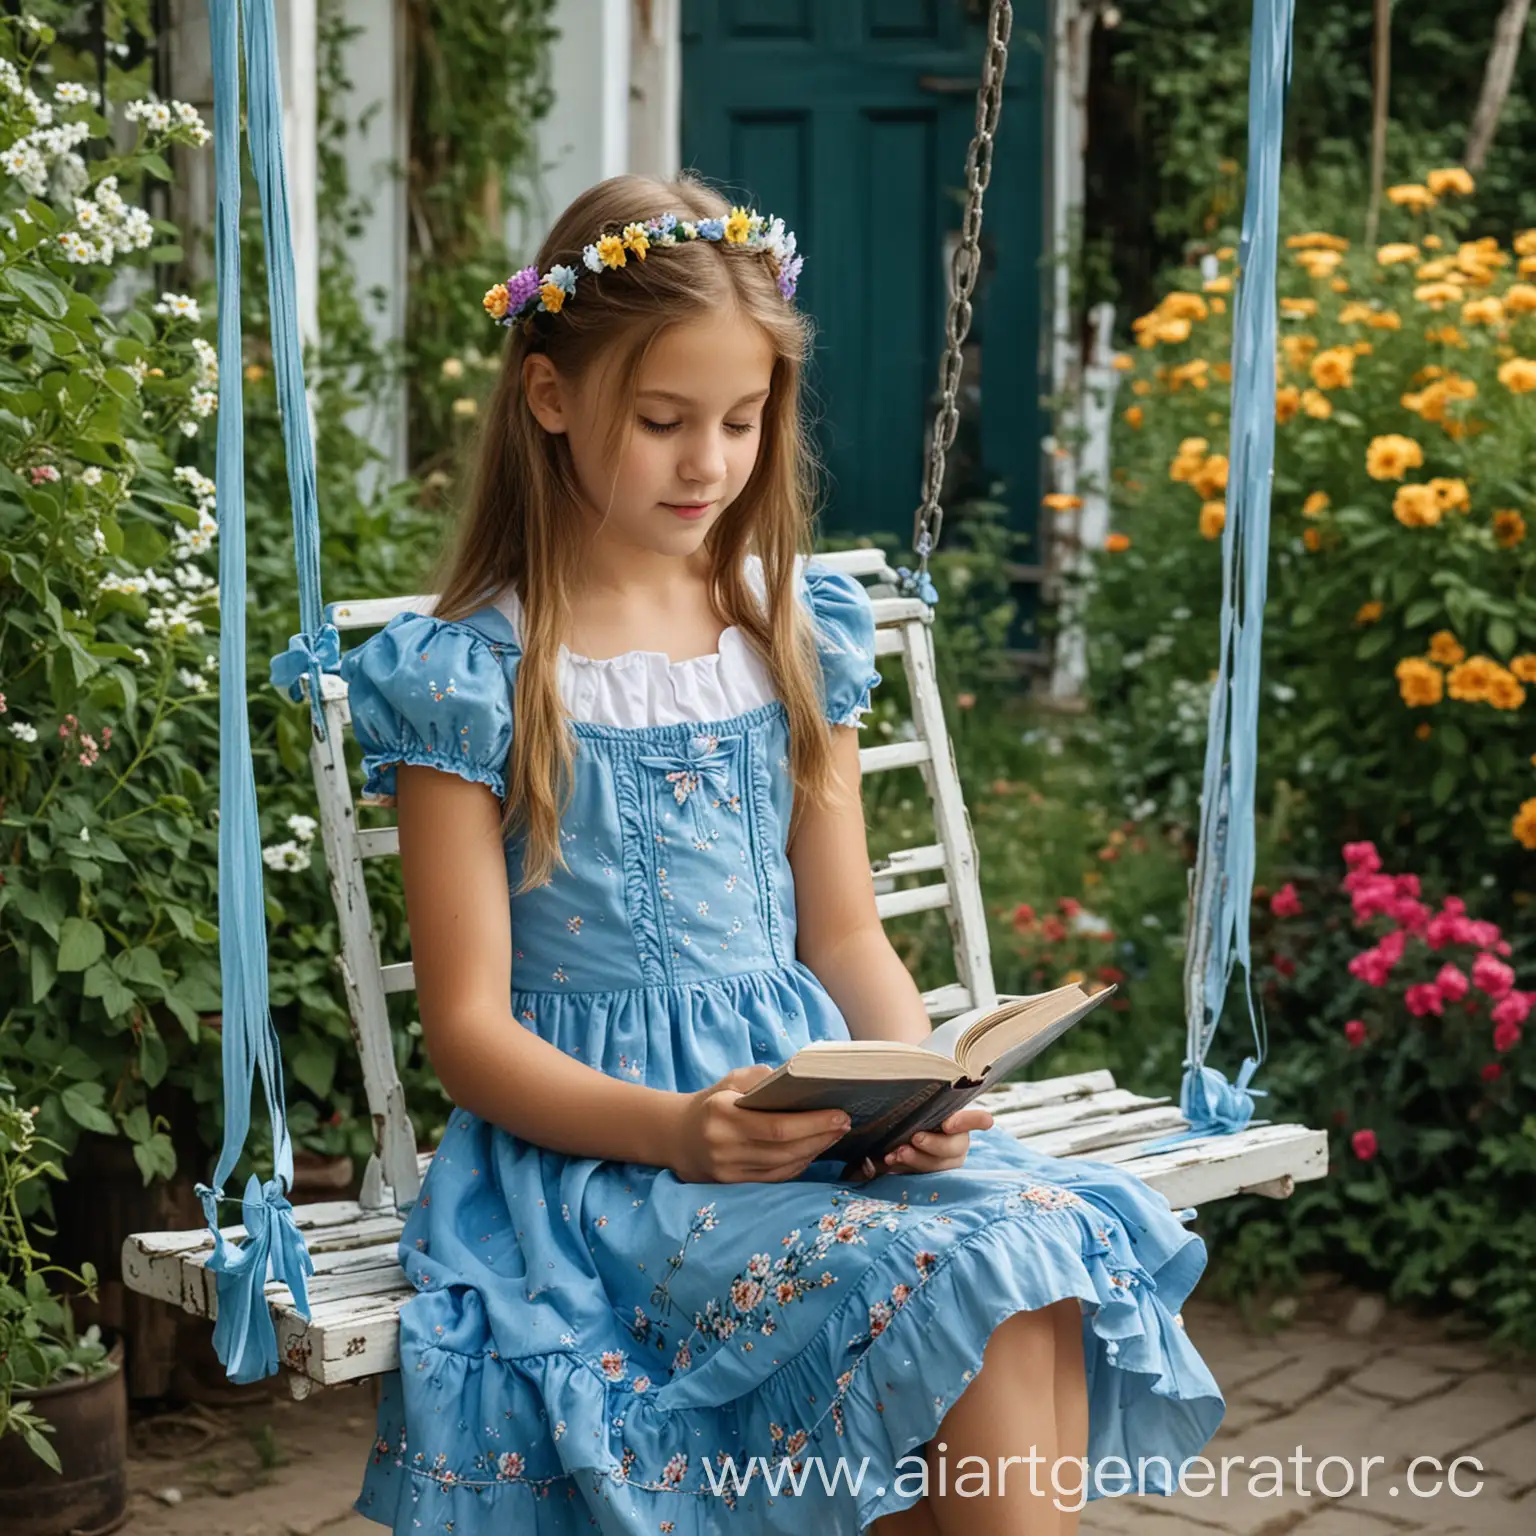 Реальная фотография. Девочка 12 лет сидит на качелях на даче и читает книгу. Лето. Тепло. На заднем плане цветы. На девочке голубое платье, ленточки в волосах